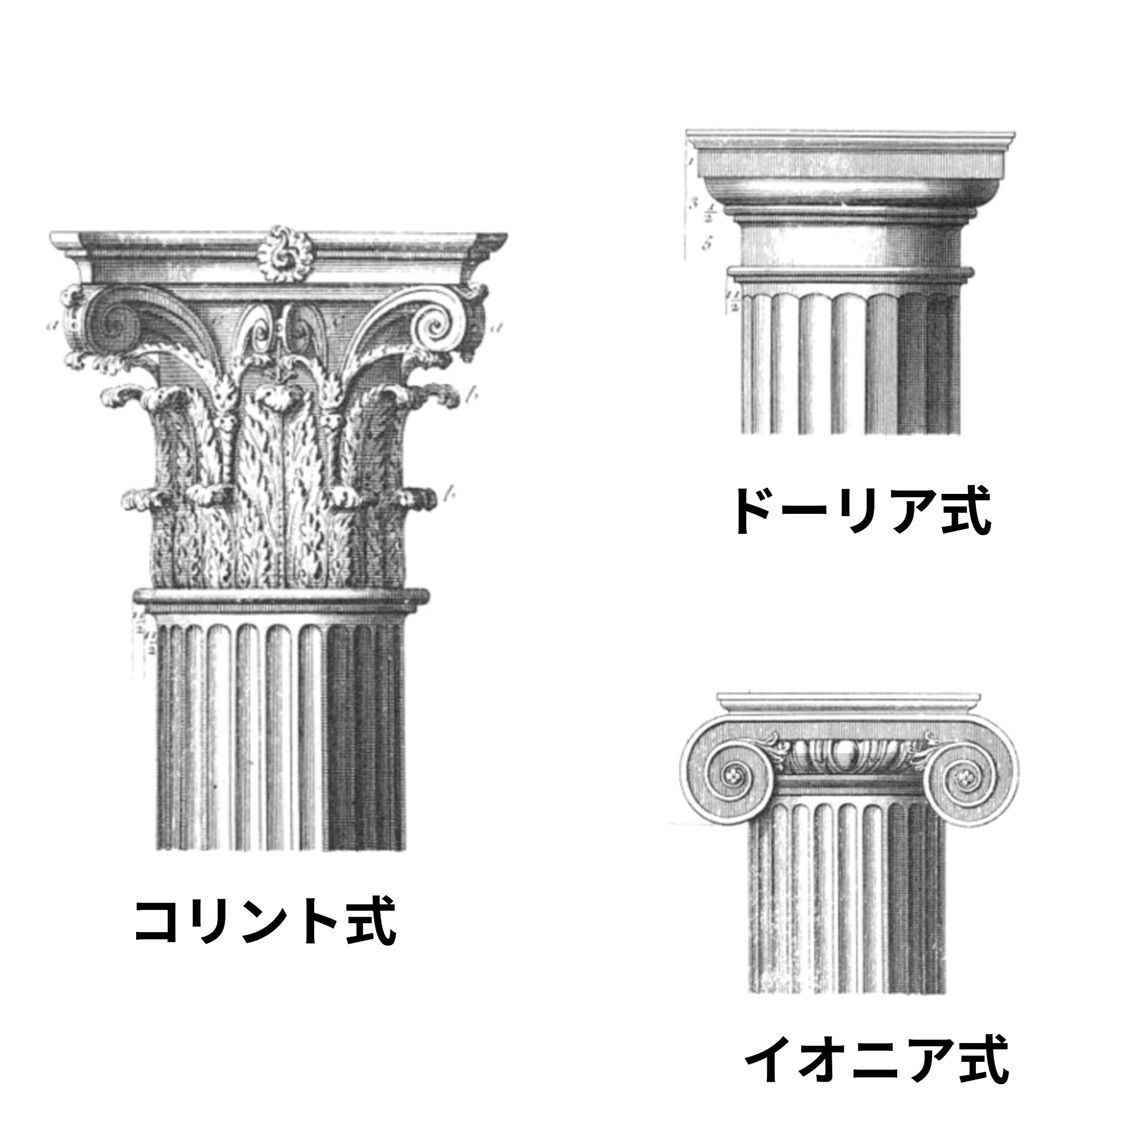 美検 古代ギリシャの柱頭を覚えよう ドーリア イオニア コリント アートの定理